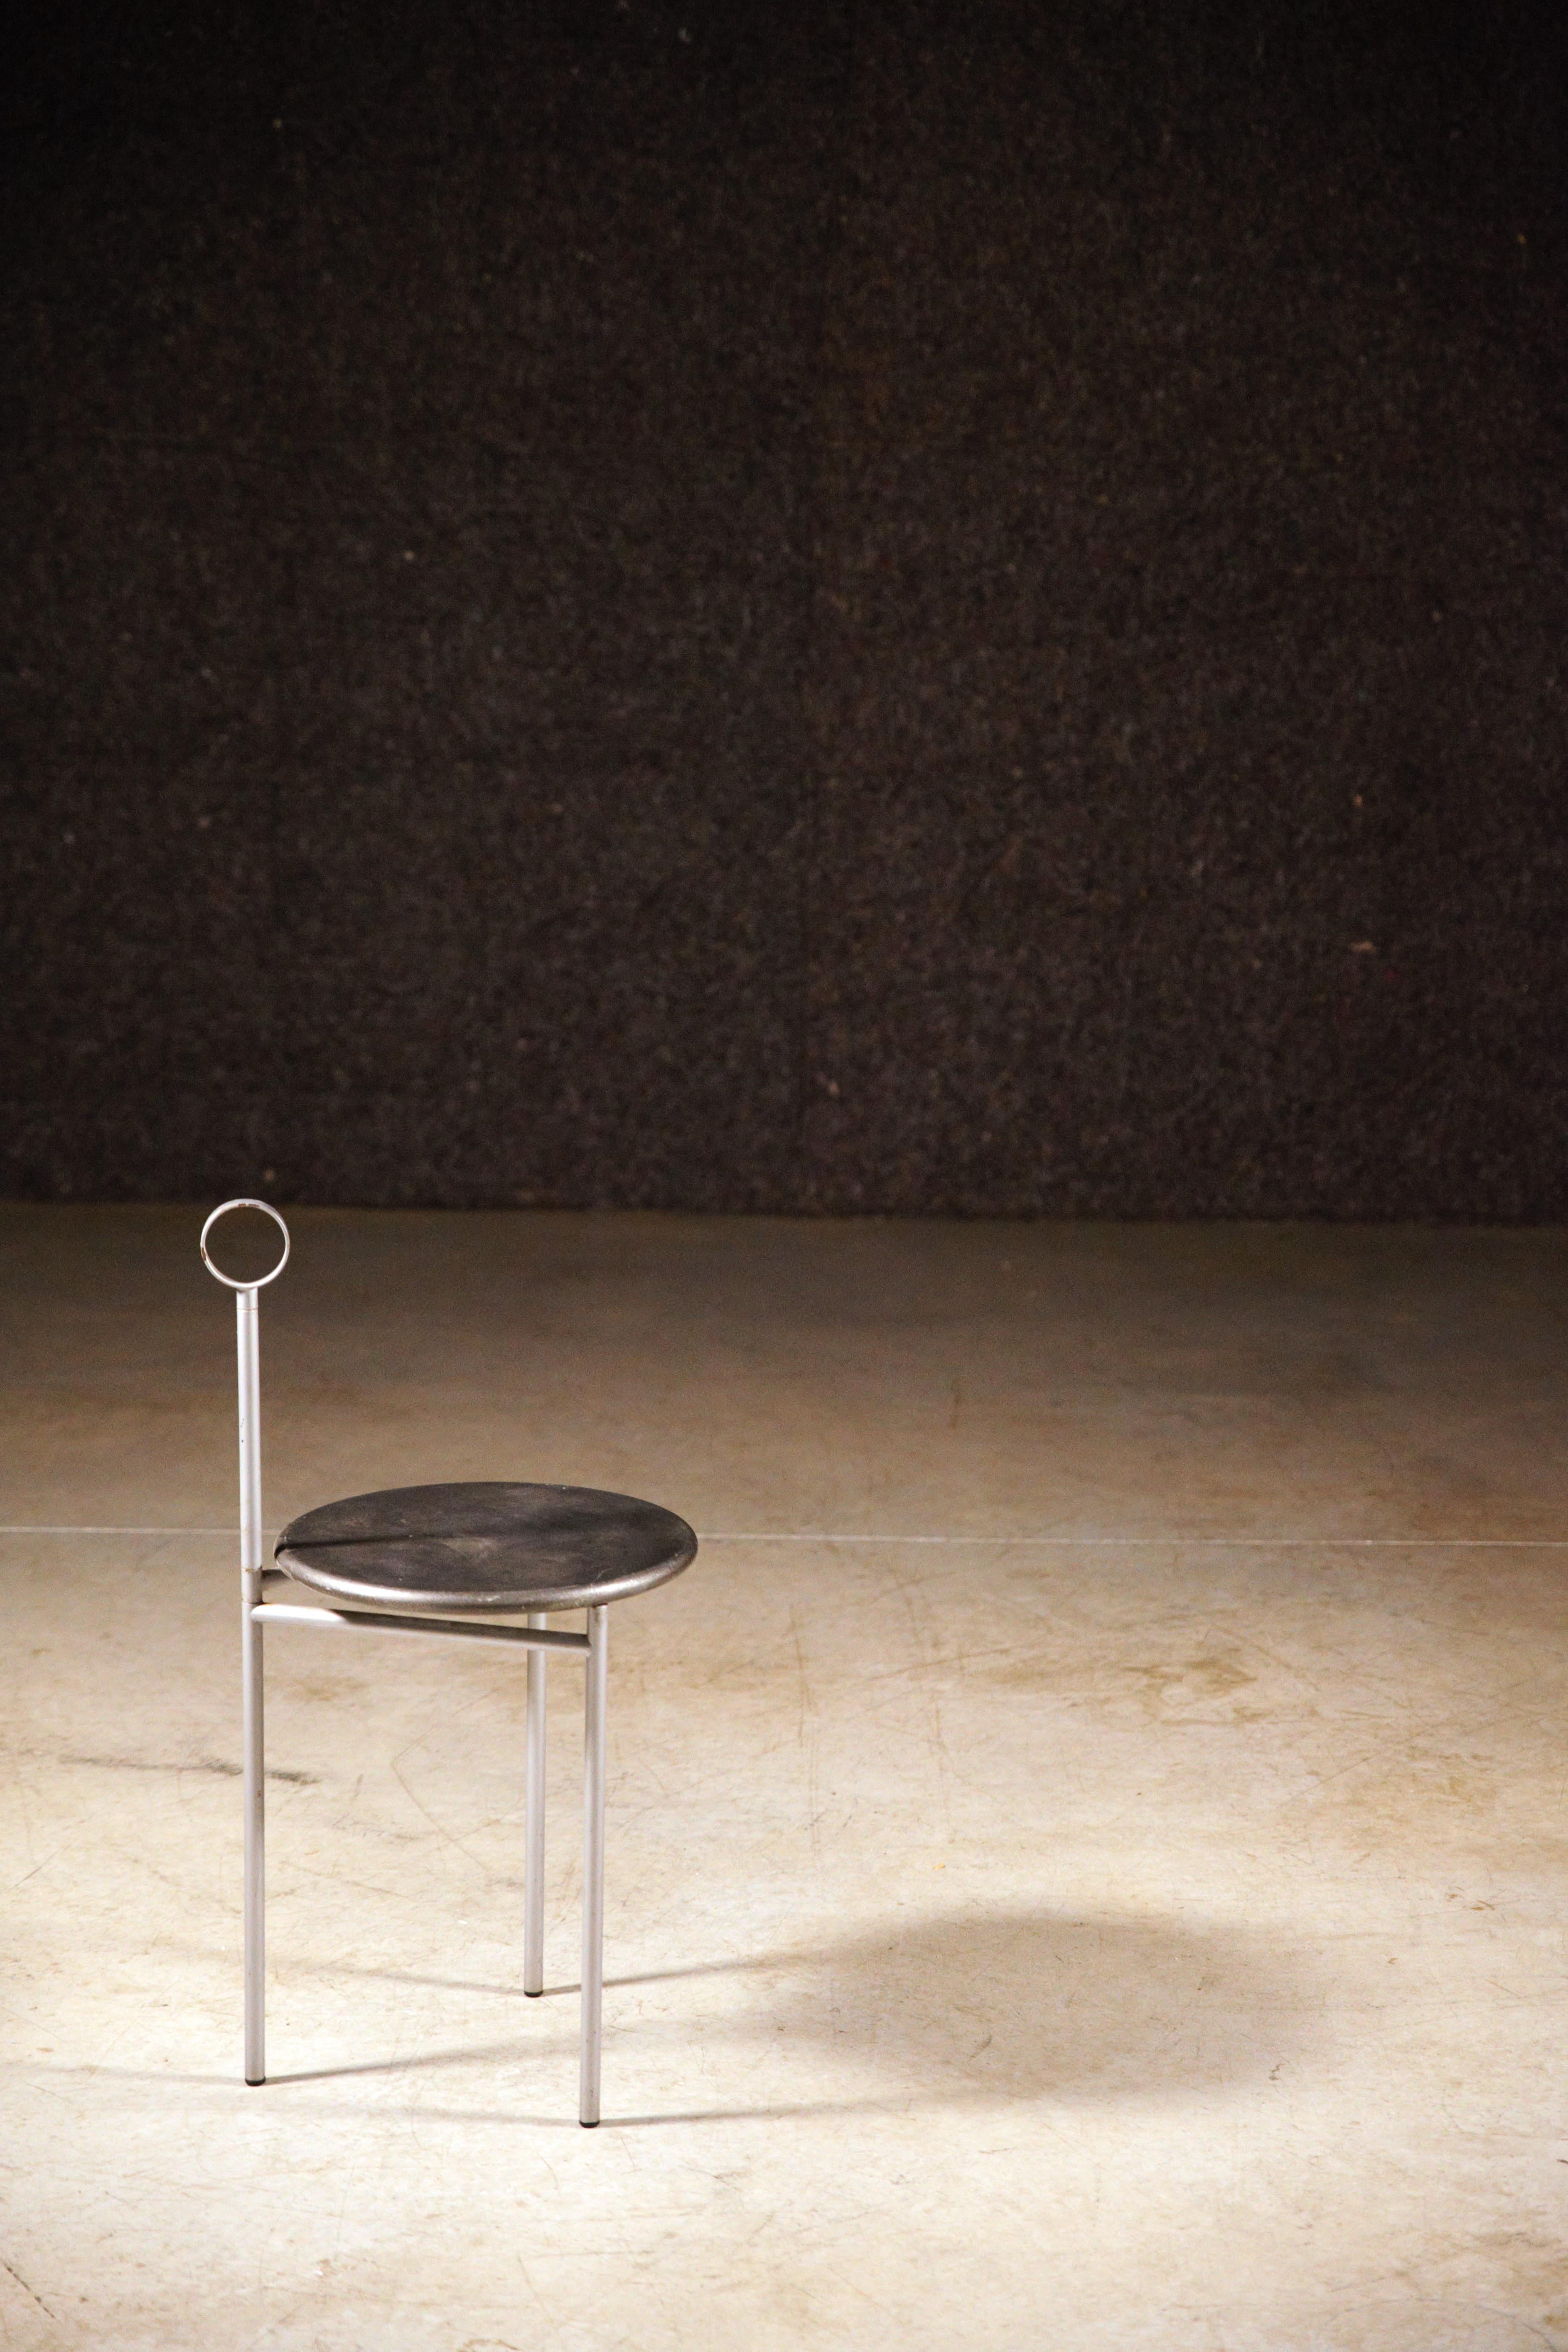 Ein radikaler Beistelltisch von Philippe Starck für Driade.

Faltbarer Tisch.

Unterzeichnet unter.

Einige Mängel an der Farbe.

Ursprünglicher Zustand.